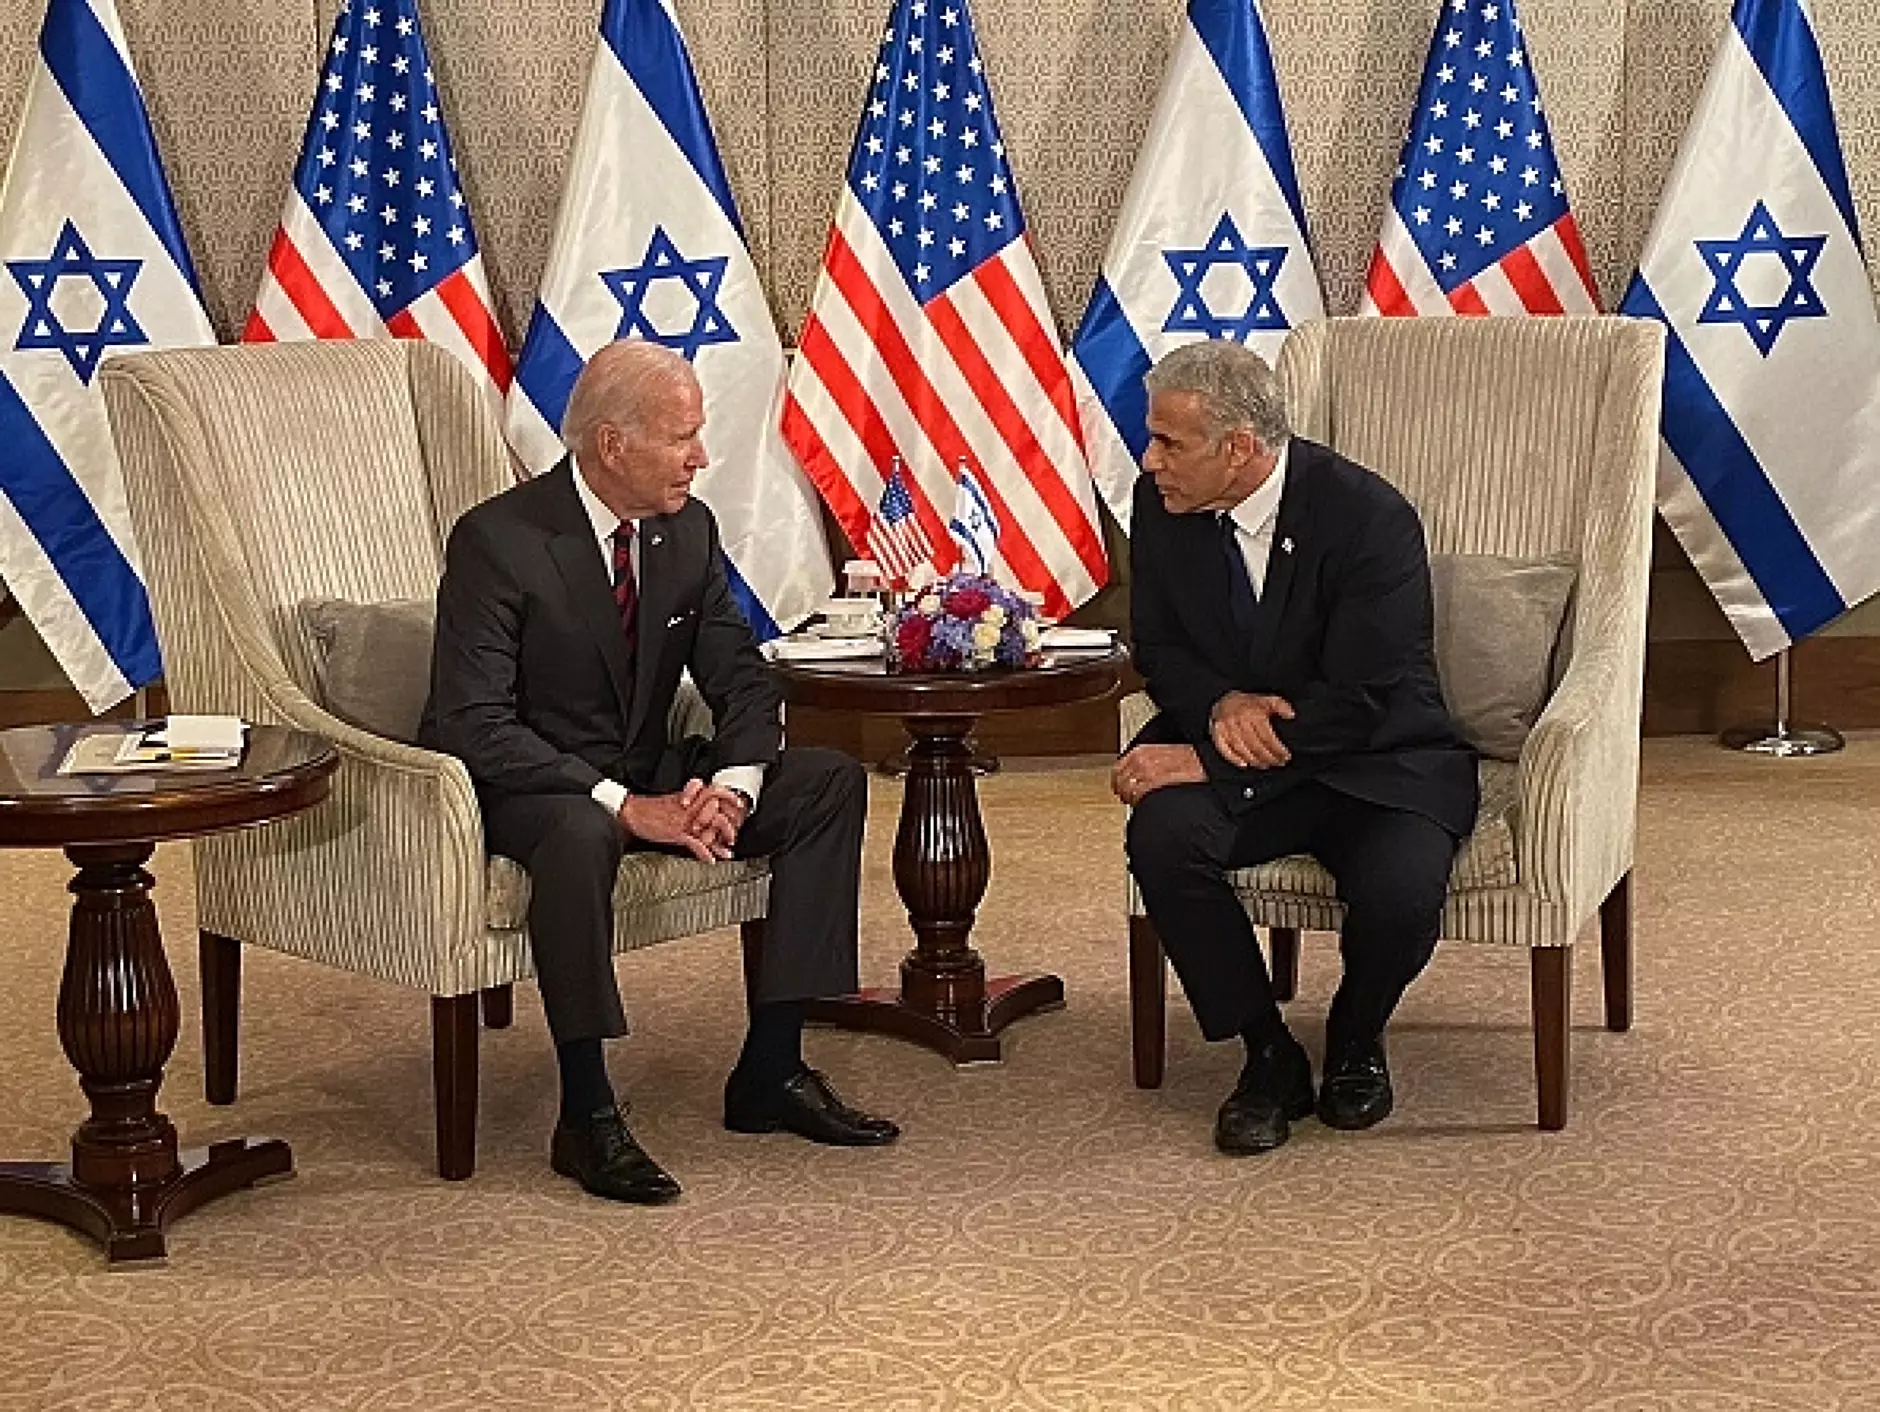 САЩ и Израел договориха военно сътрудничество срещу Иран